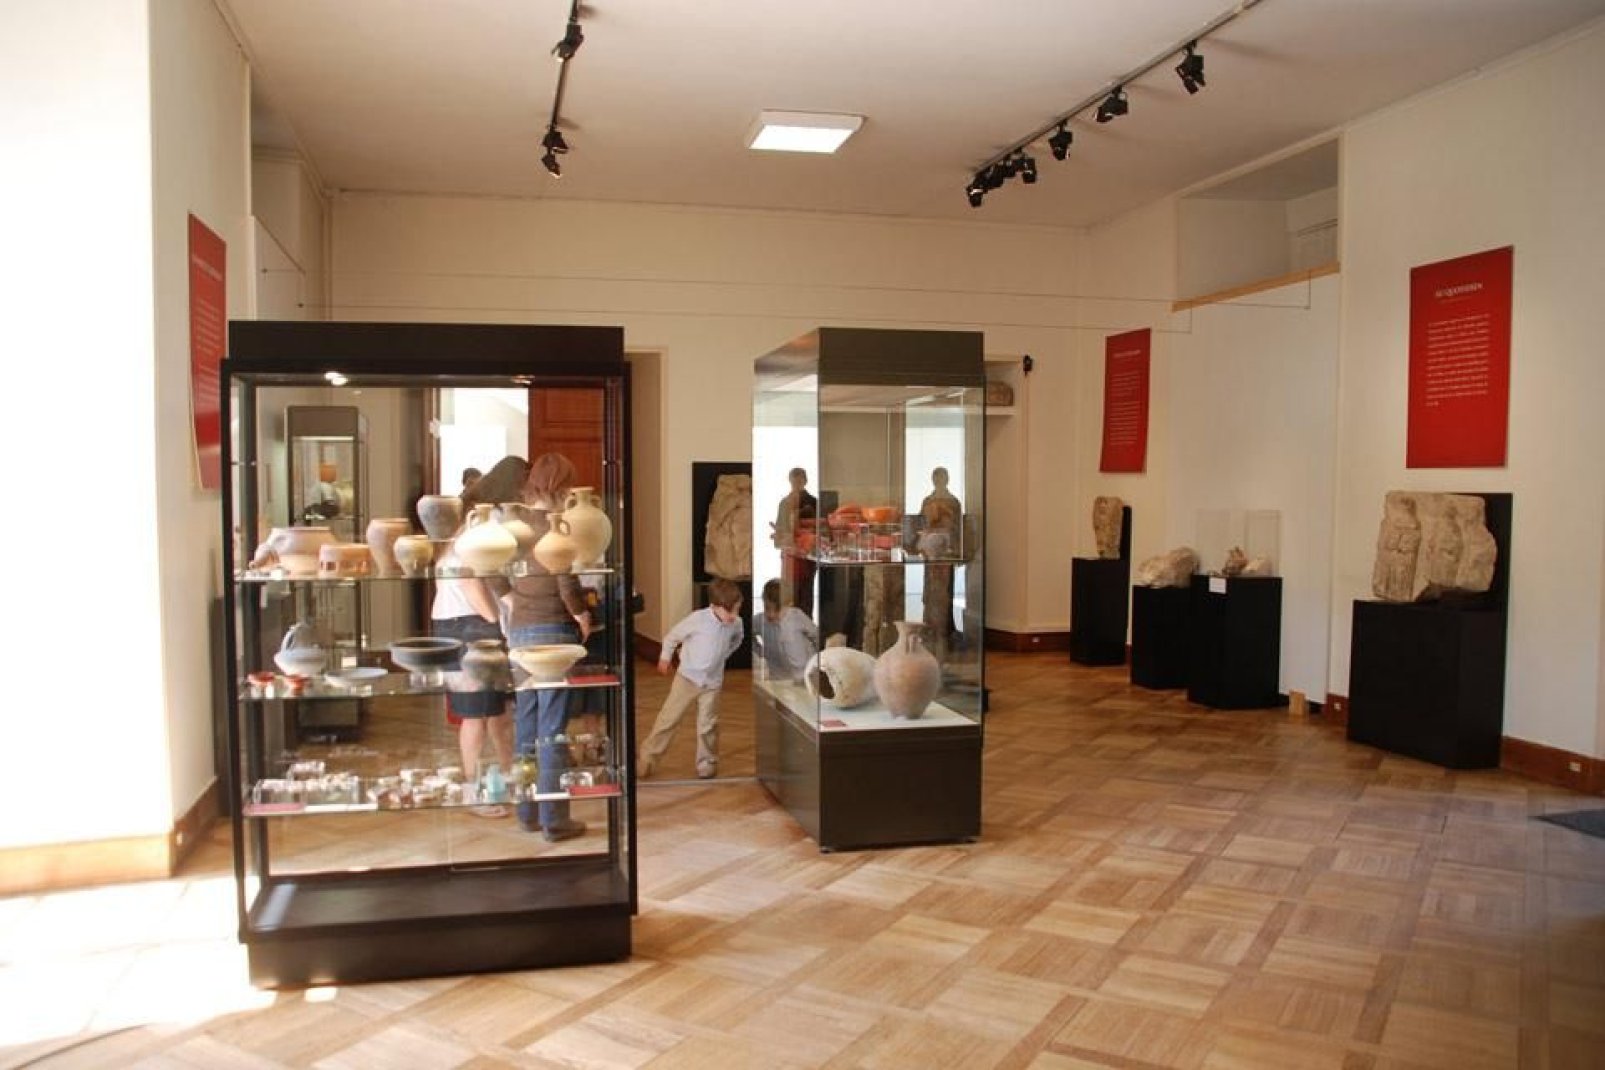 En este museo encontrarás arte, historia y tradiciones locales.